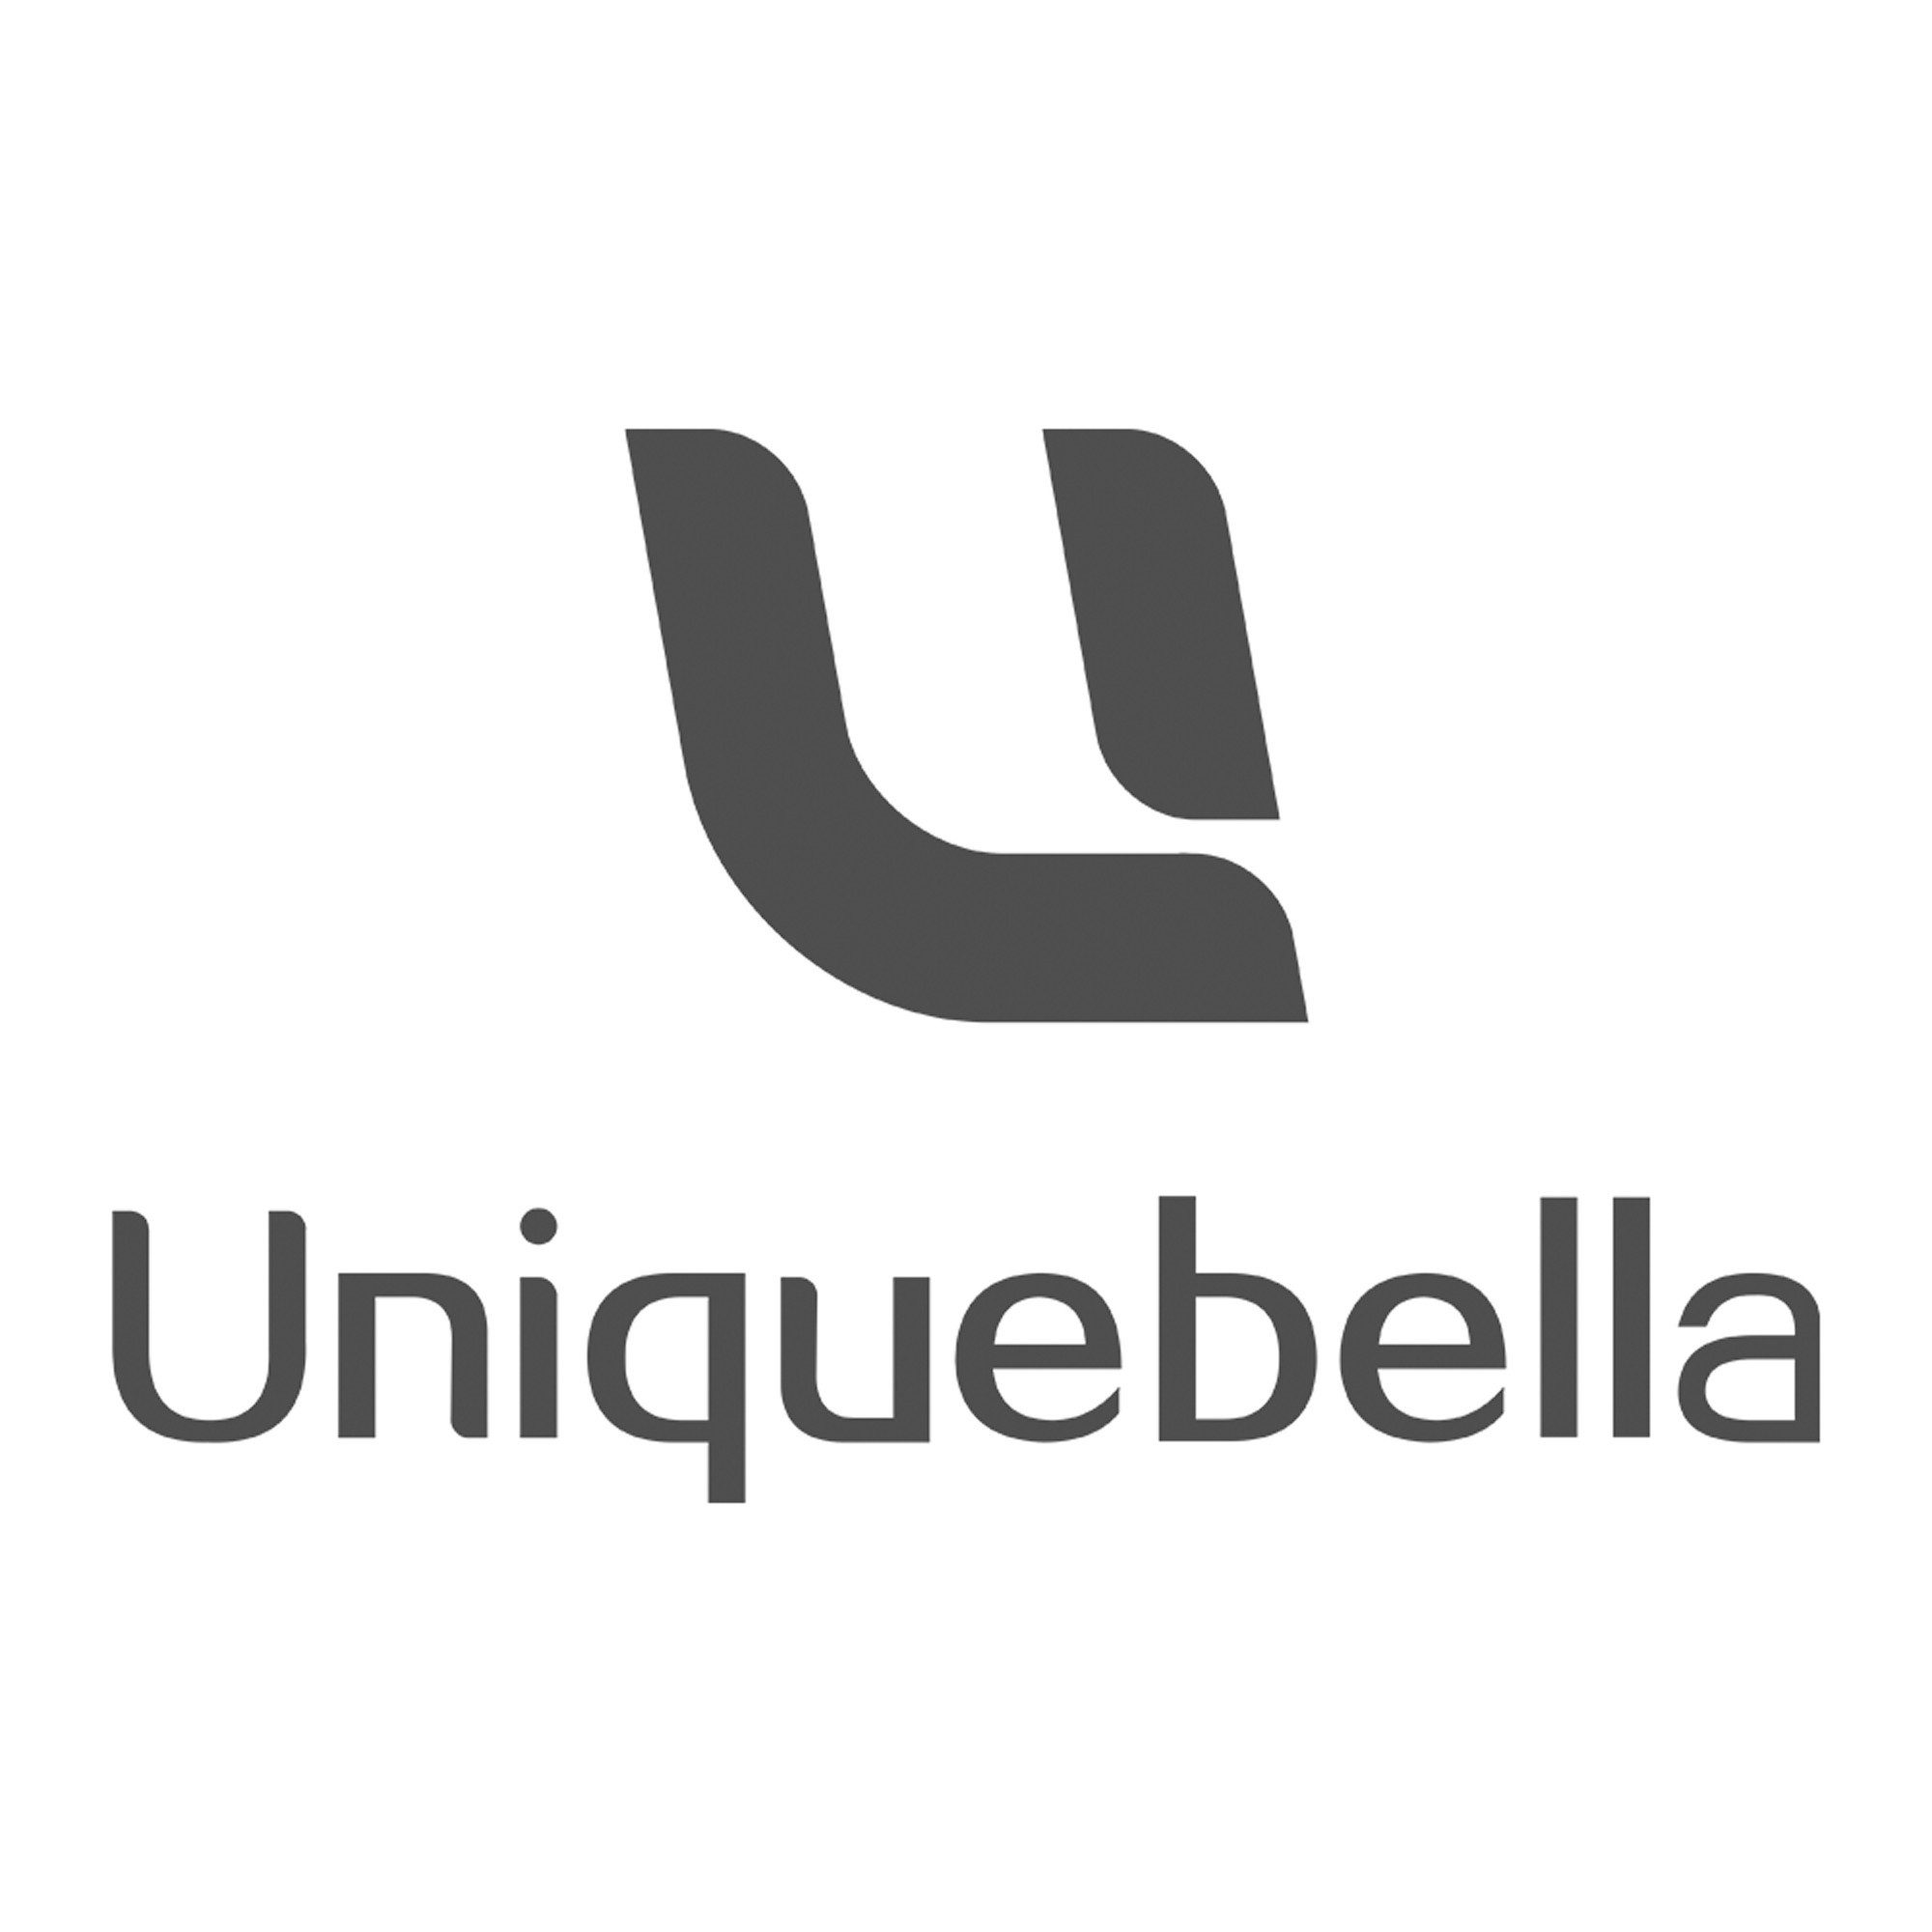 Uniquebella